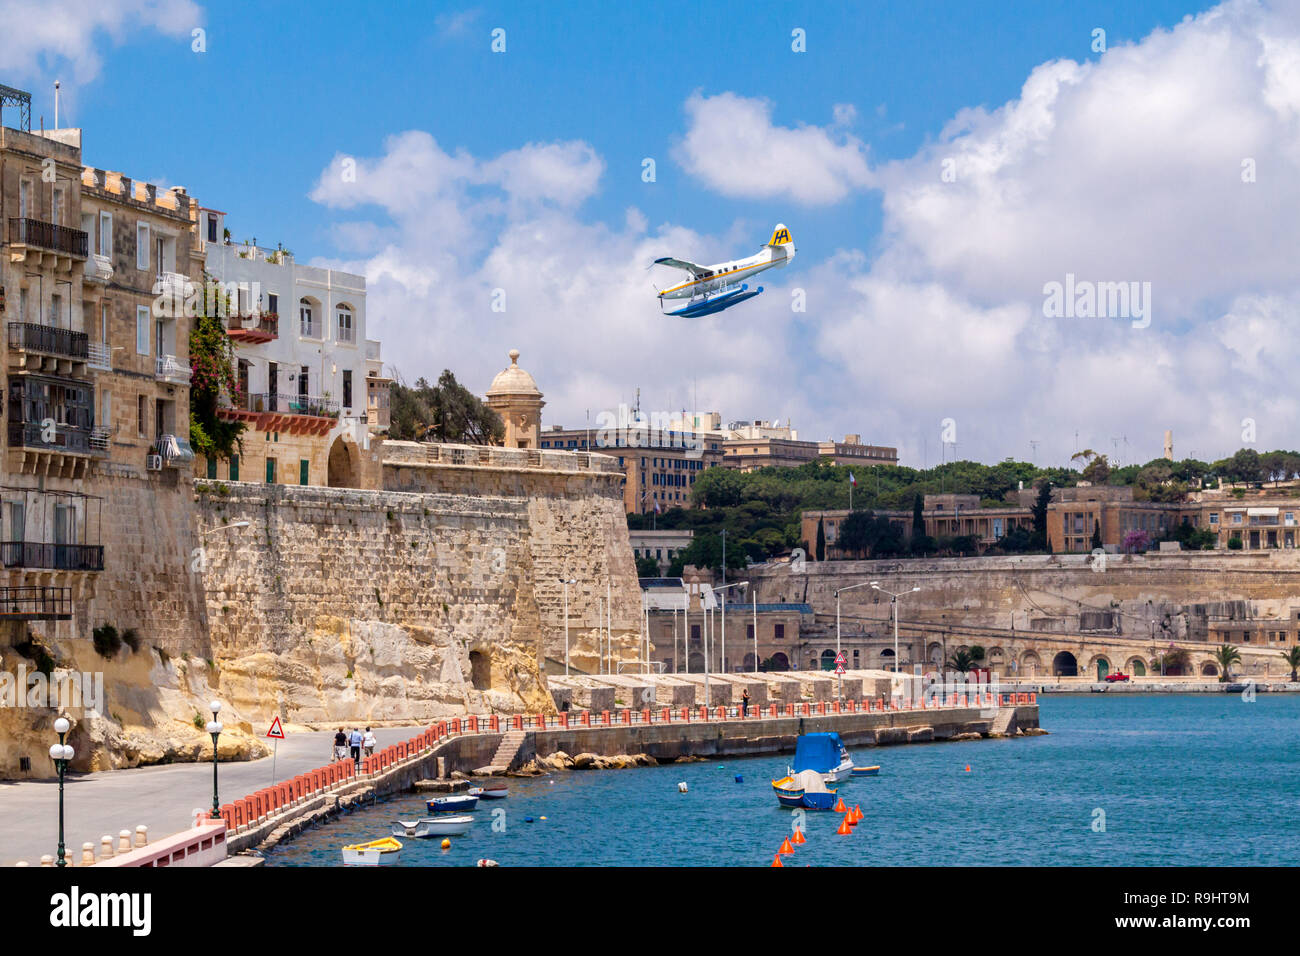 Valetta, Malta - 20.Juni 2010: Harbour Air Wasserflugzeug De Havilland Canada DHC-3 Otter Turbine 9 H-AFA ist Wasser Landung in den Grand Harbour. Stockfoto